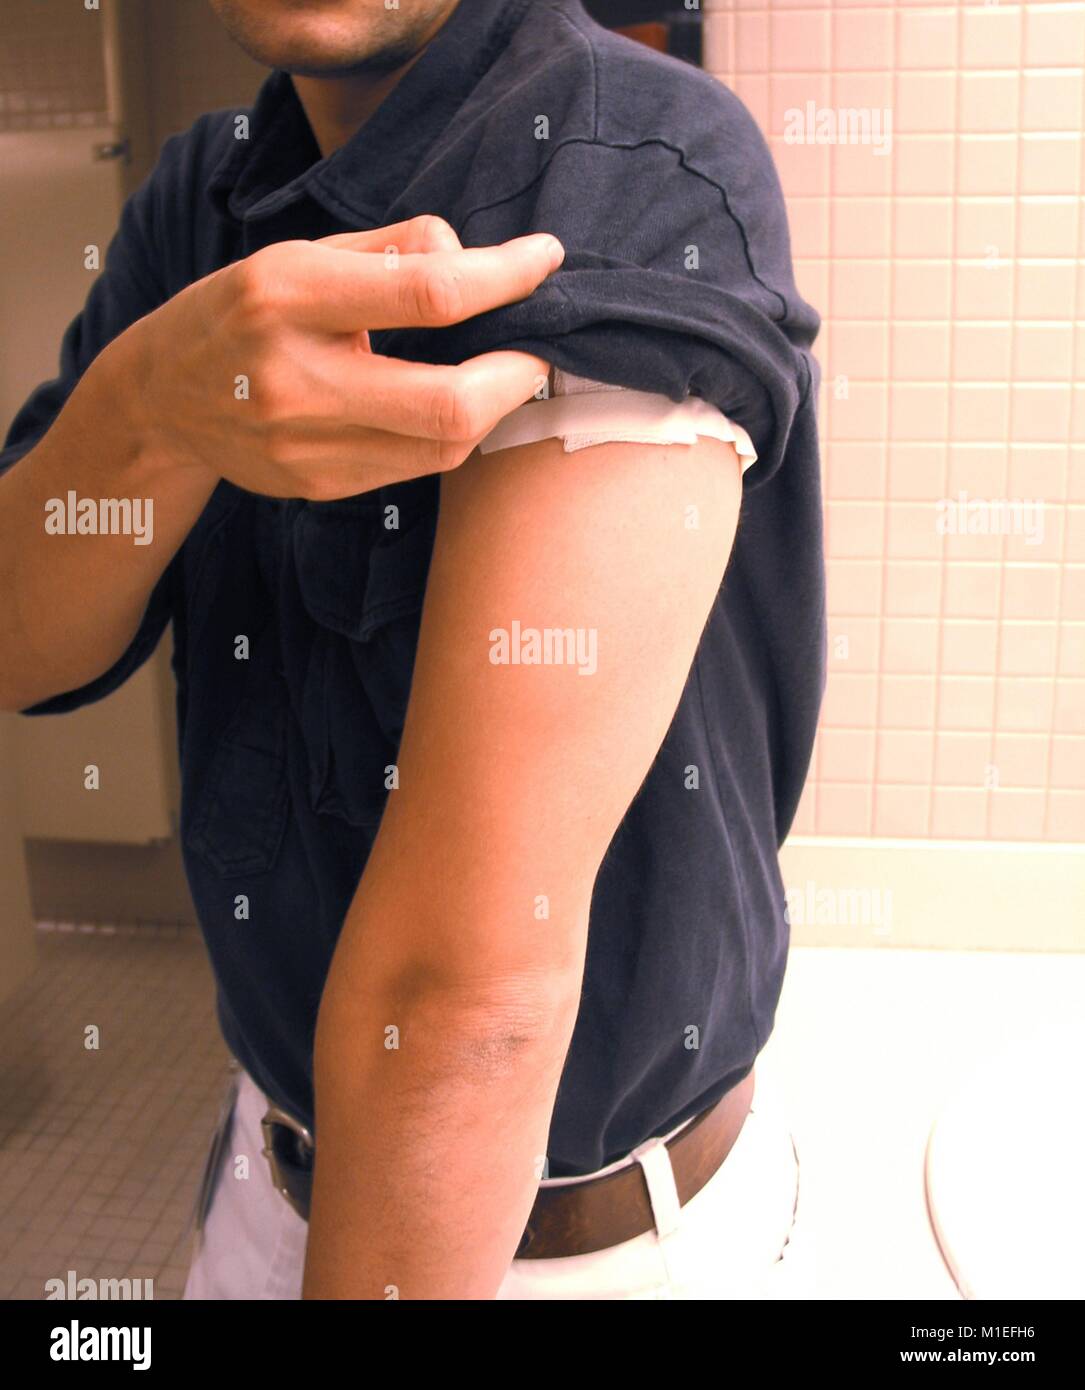 Nahaufnahme von einem Mann in seinem Hemd Hülse die Impfstelle auf seinem Oberarm, die mit Gaze und Klebeband bedeckt wurde, als Schutzmaßnahme und Pflege nach Pockenimpfung, freundlicher CDC/Kelly Thomas, 2003. () Stockfoto